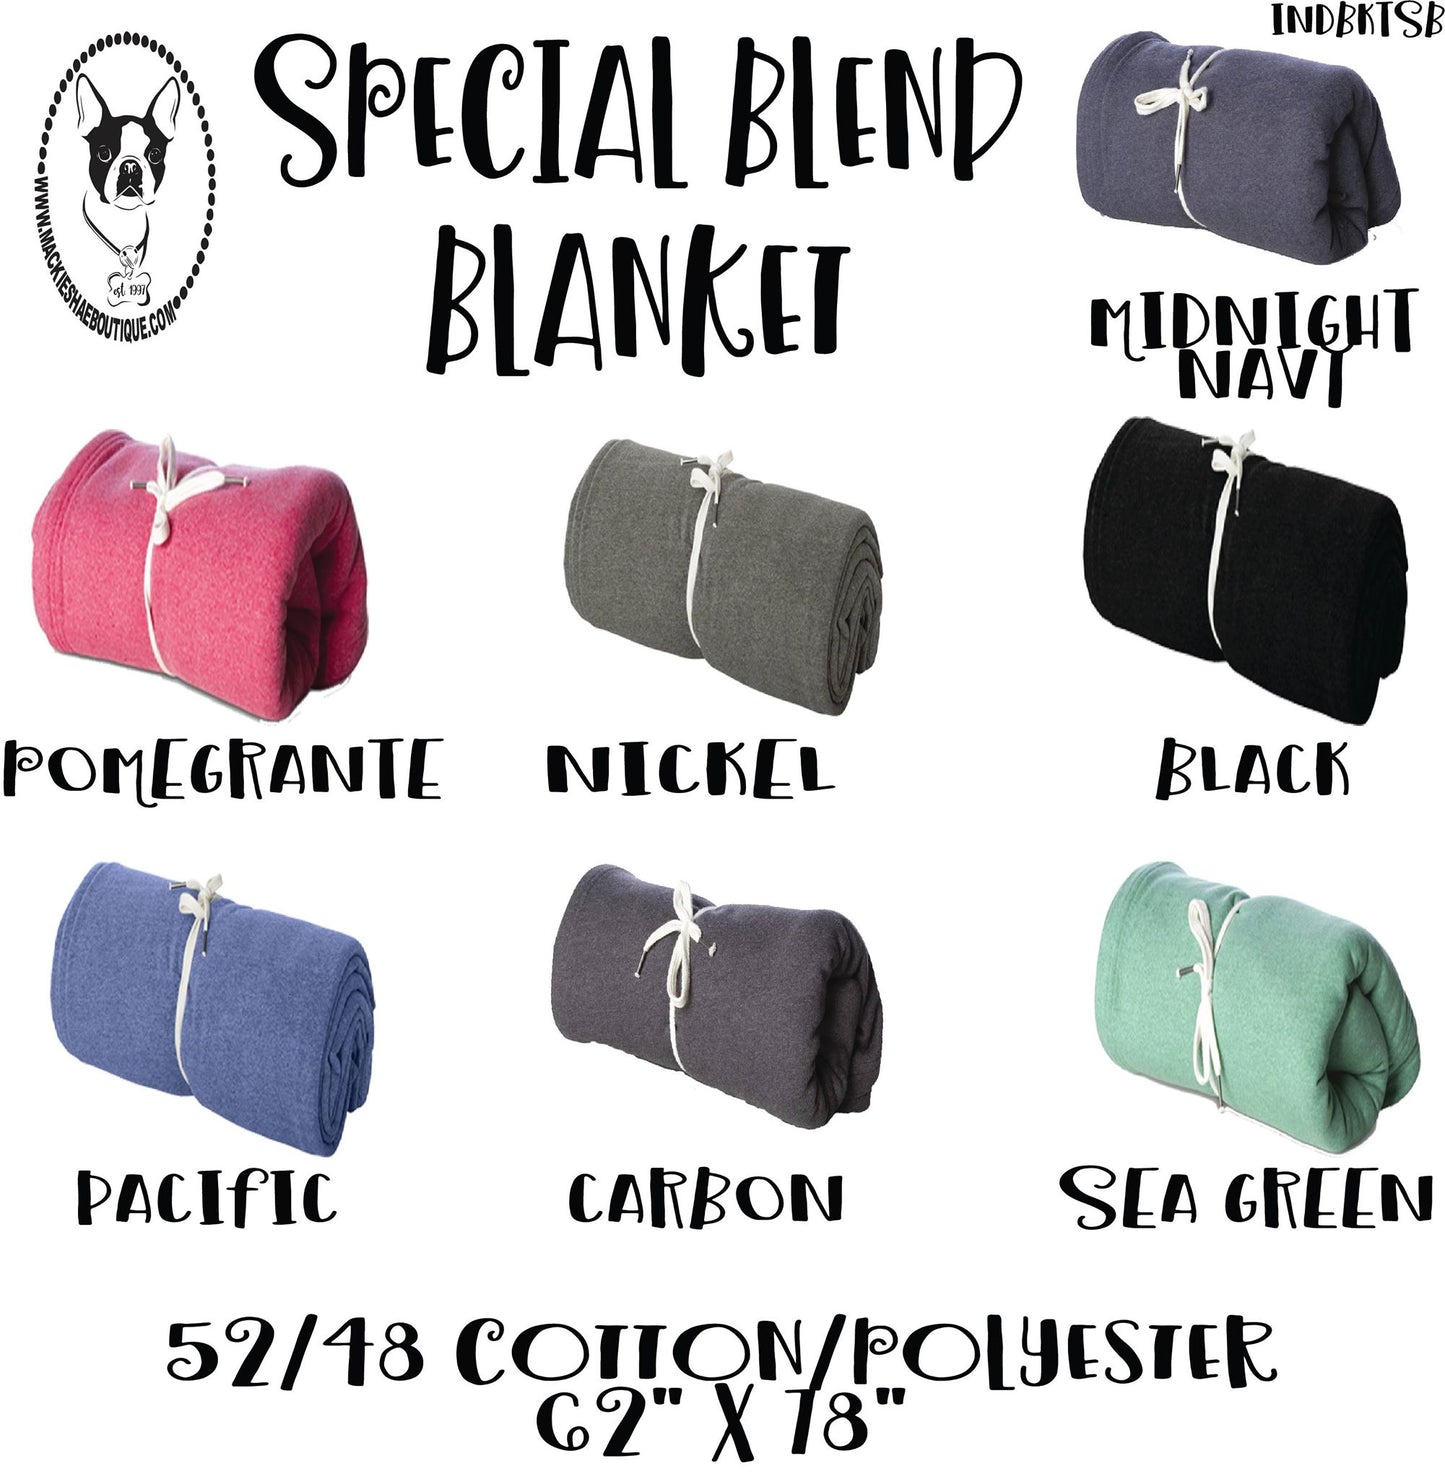 Special Blend Blanket